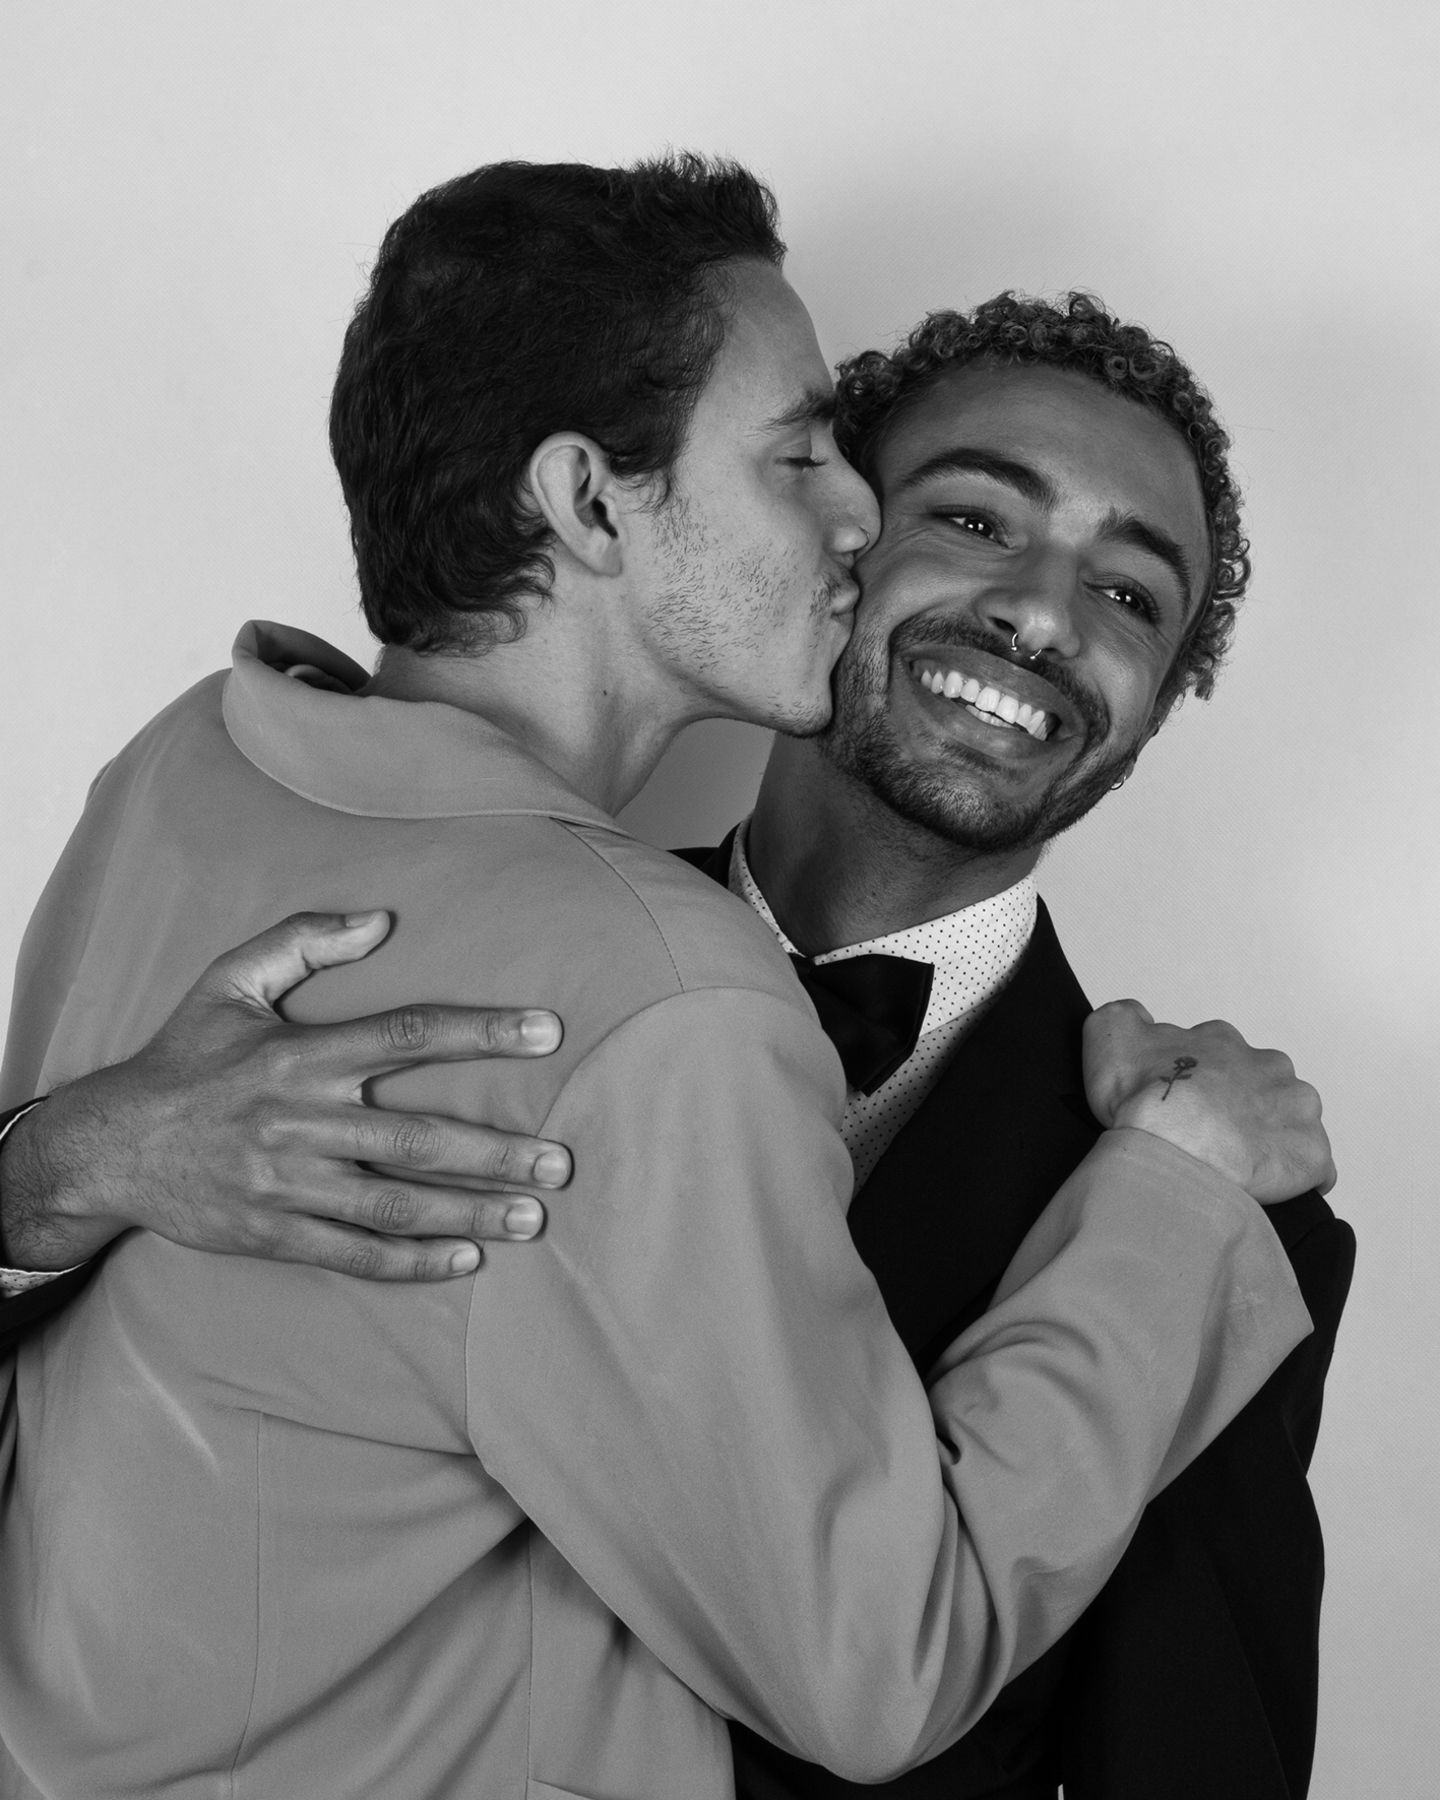 Zwei junge Männer, einer küsst den anderen liebevoll auf die Wange